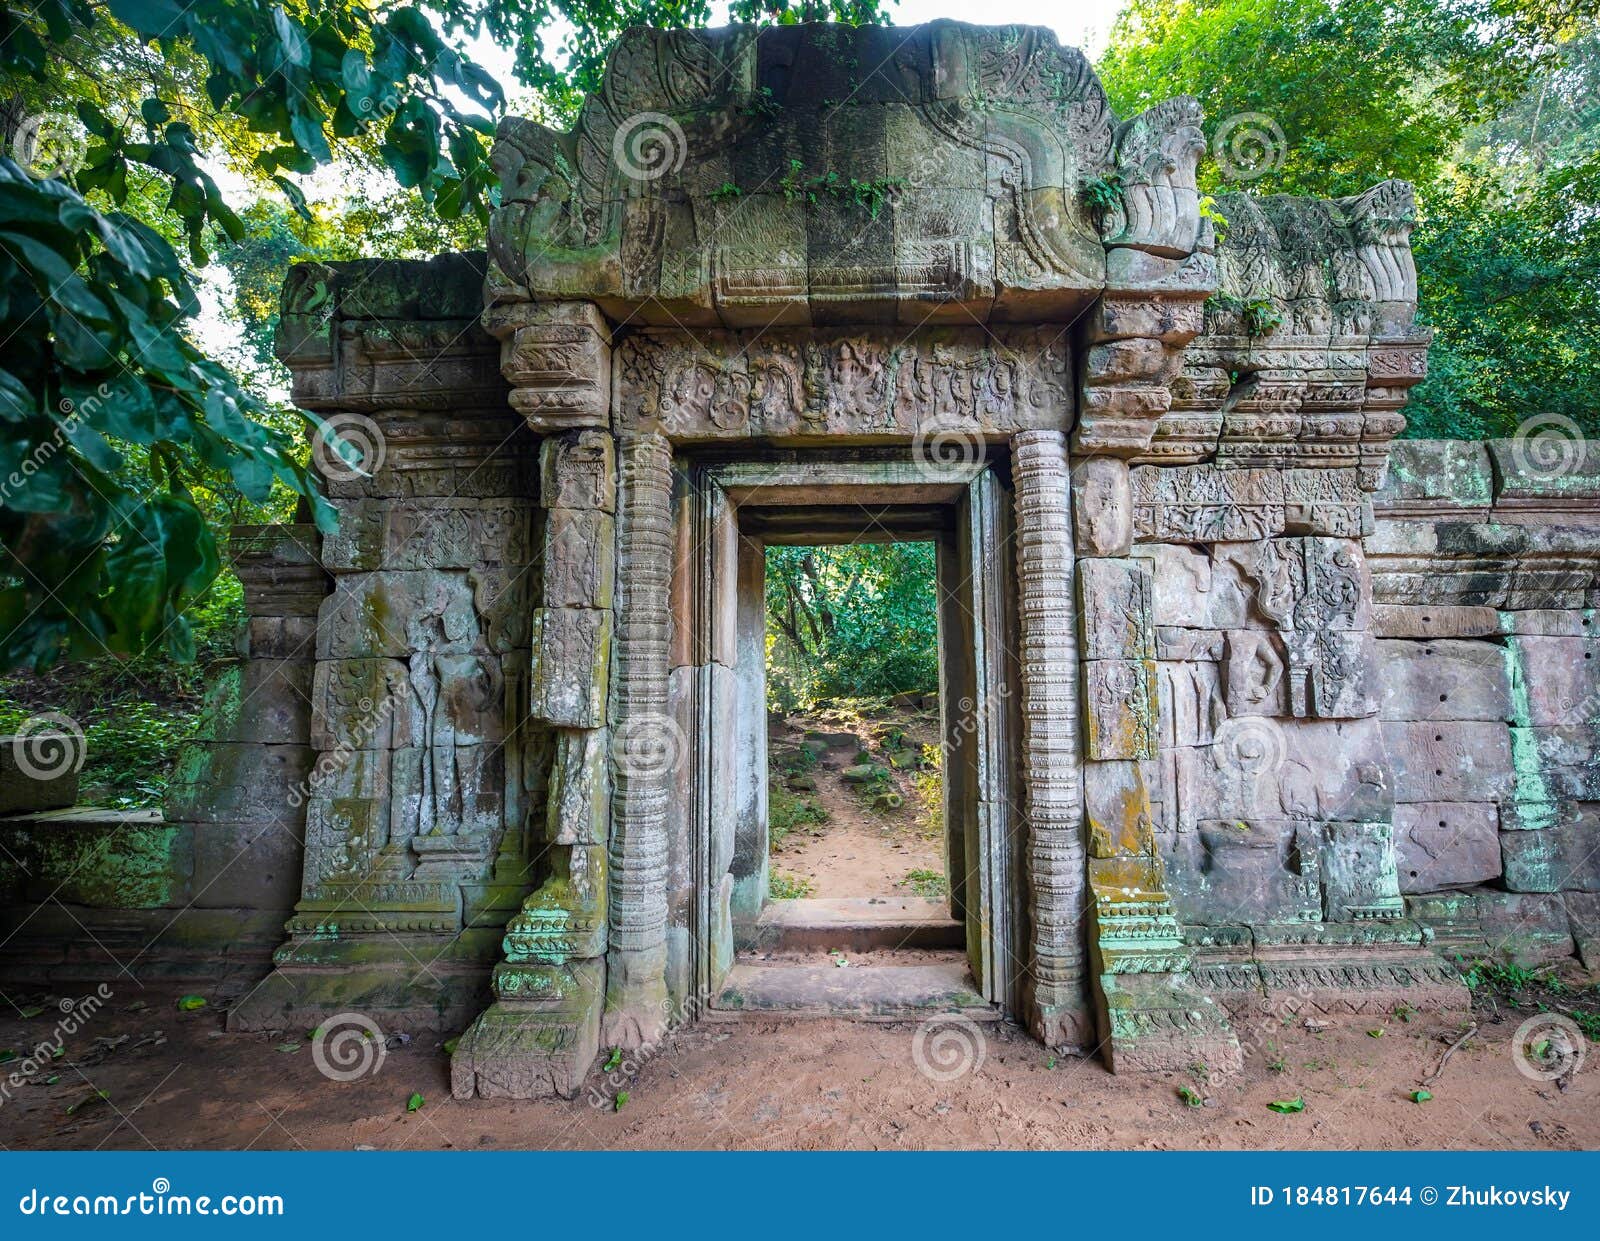 gate at bayon, the most notable temple at angkor thom, cambodia